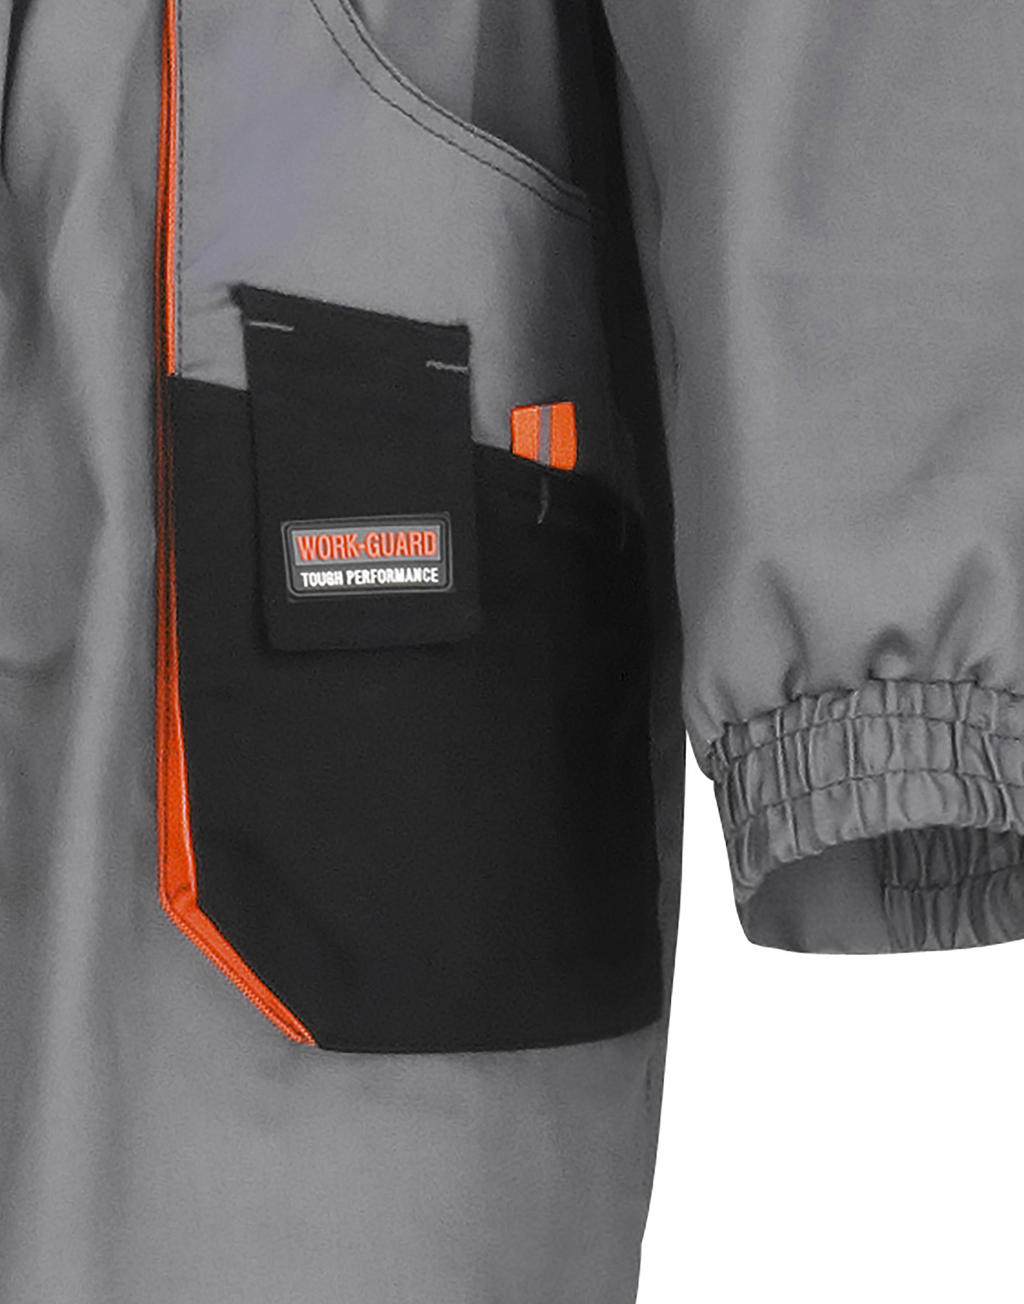  LITE Coverall in Farbe Grey/Black/Orange